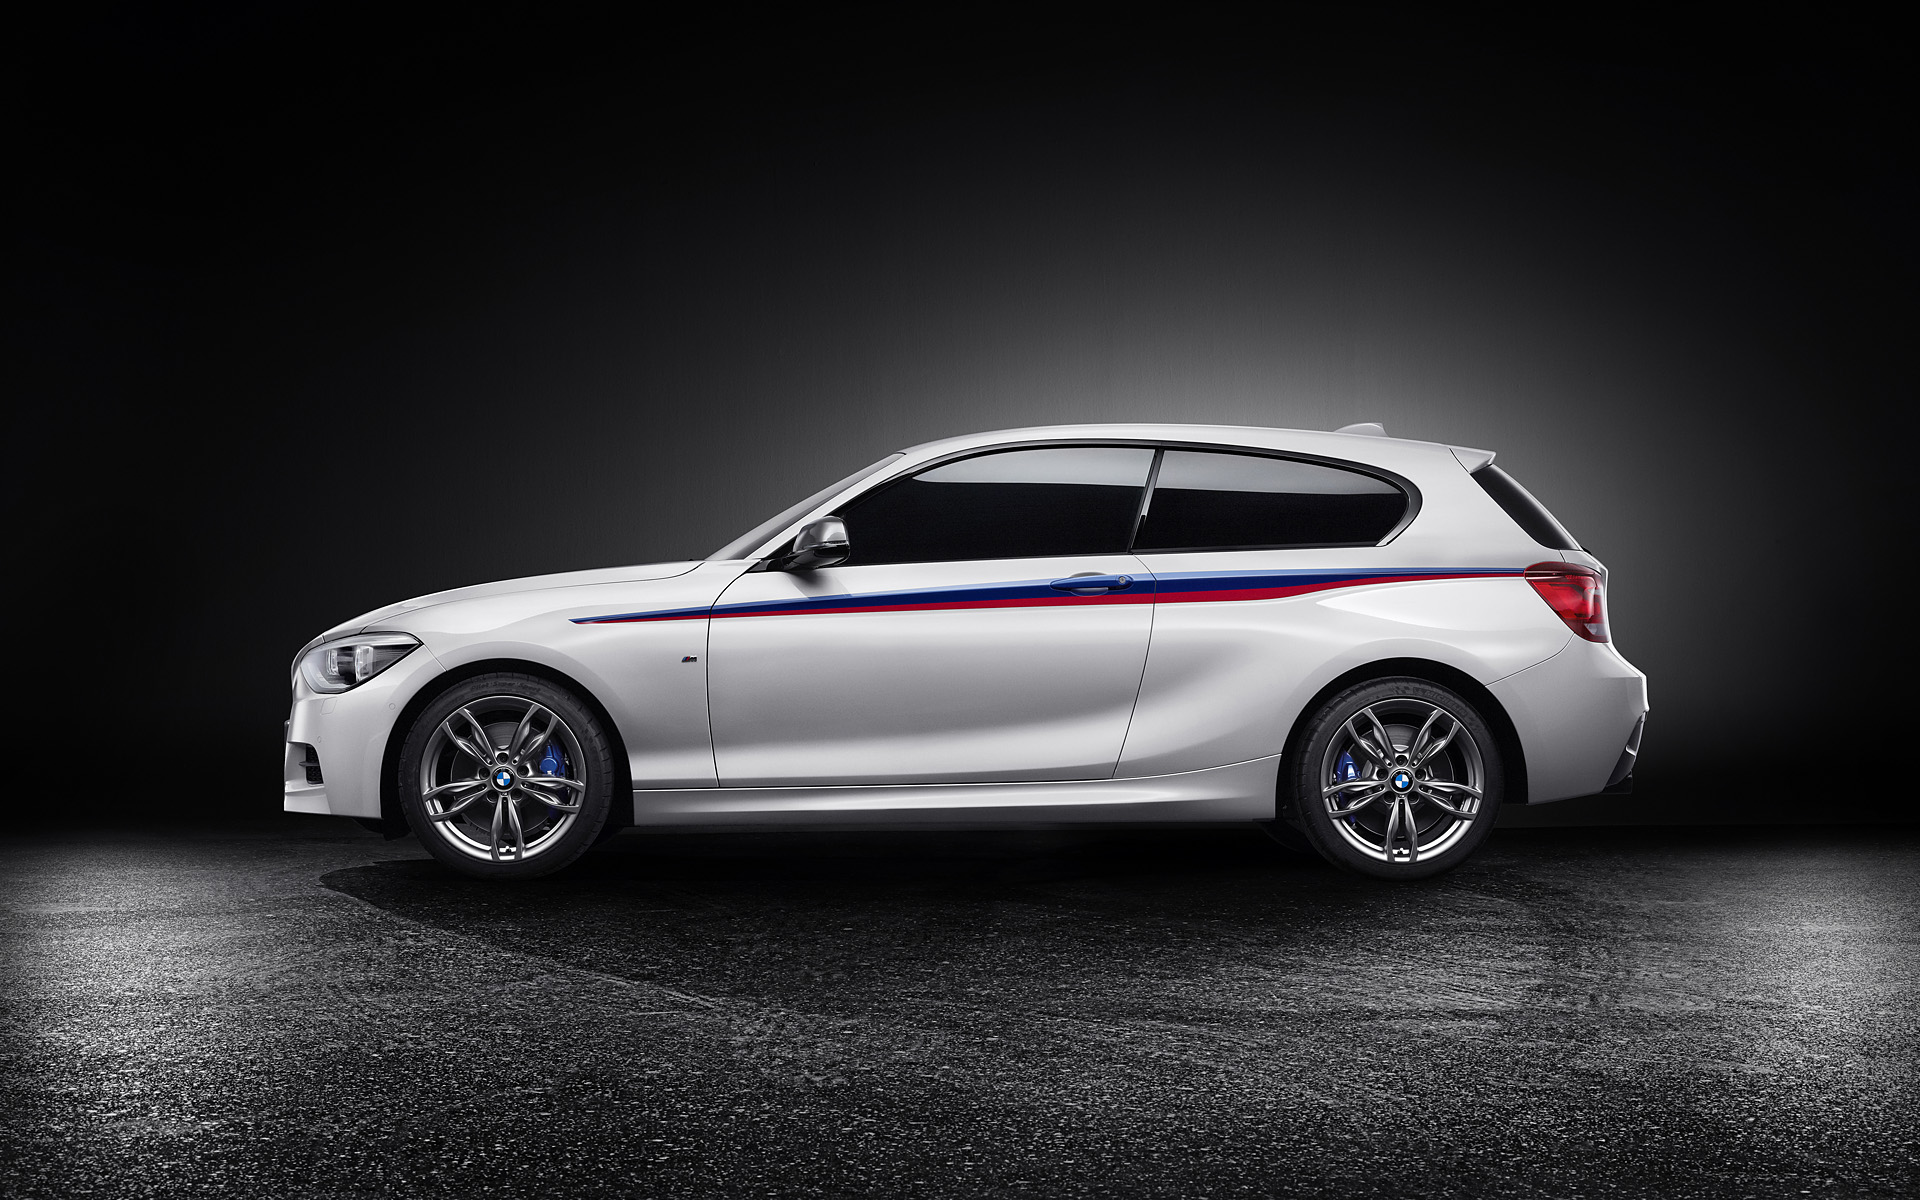  2012 BMW M135i Concept Wallpaper.